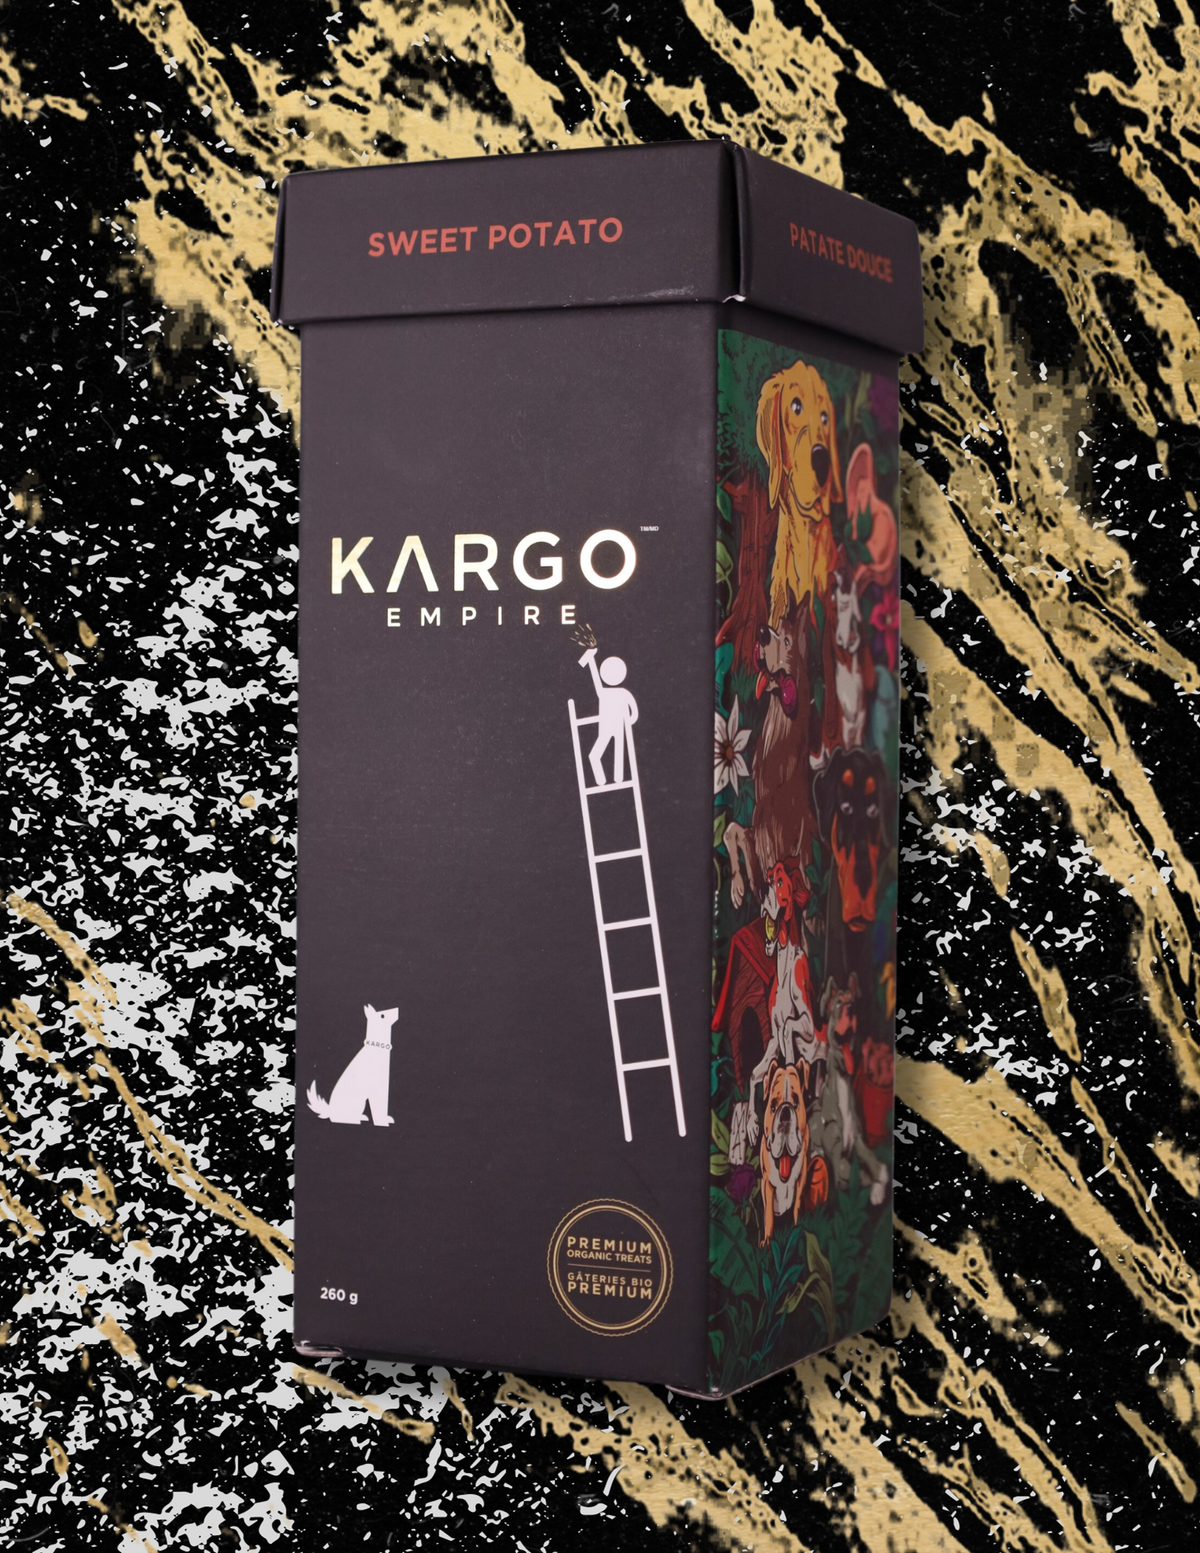 Kargo Empire Sweet Potato Treats